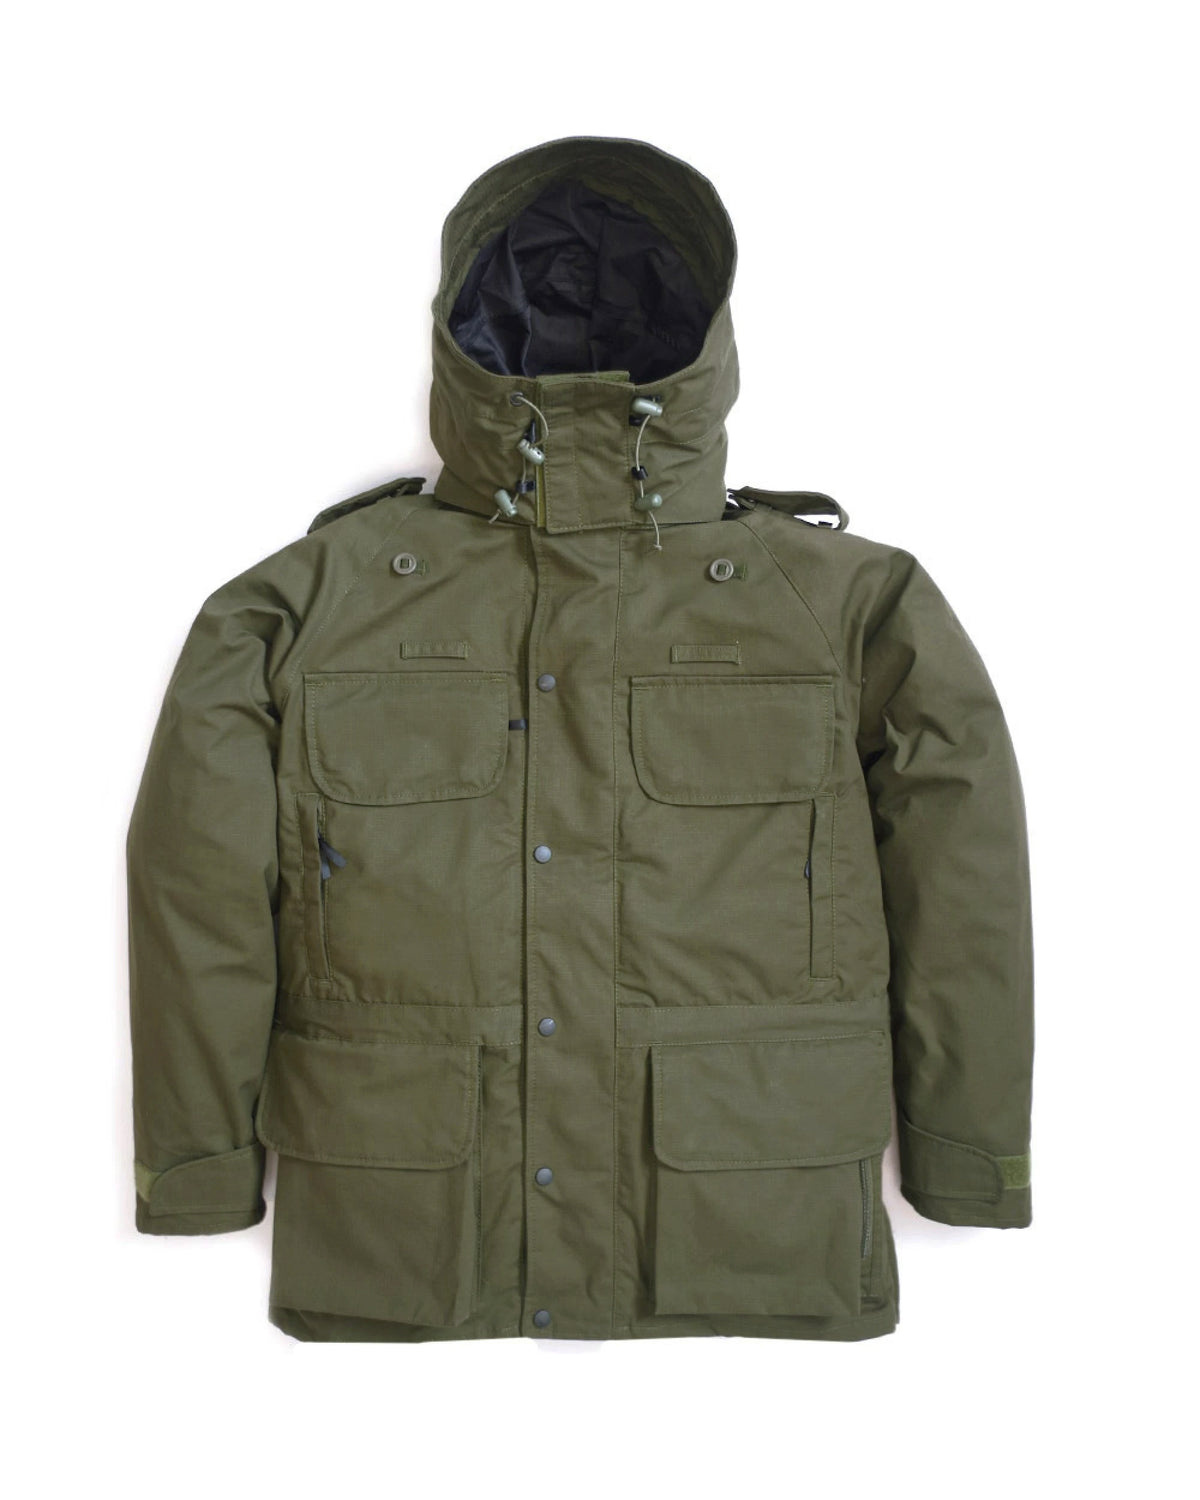 B315 Avenger Coat & Detachable Fleece - Olive Green – Arktis Store